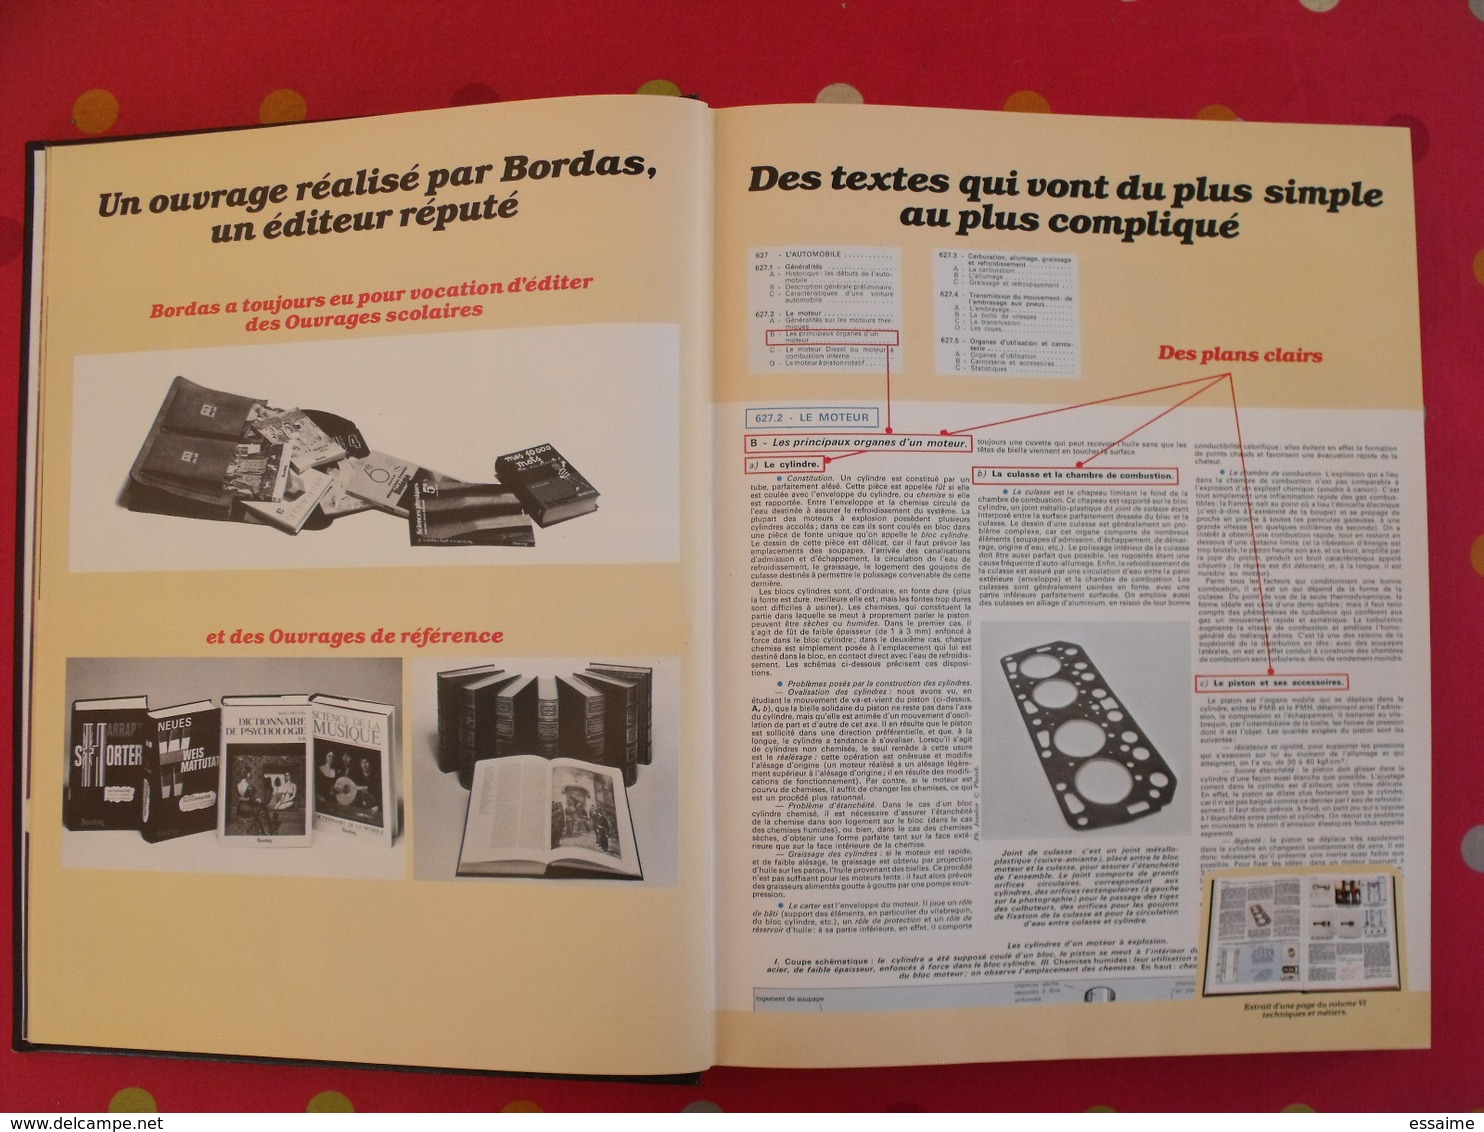 la nouvelle universelle Bordas. maquette de représentant. Encyclopédie, publicité. sd vers 1980